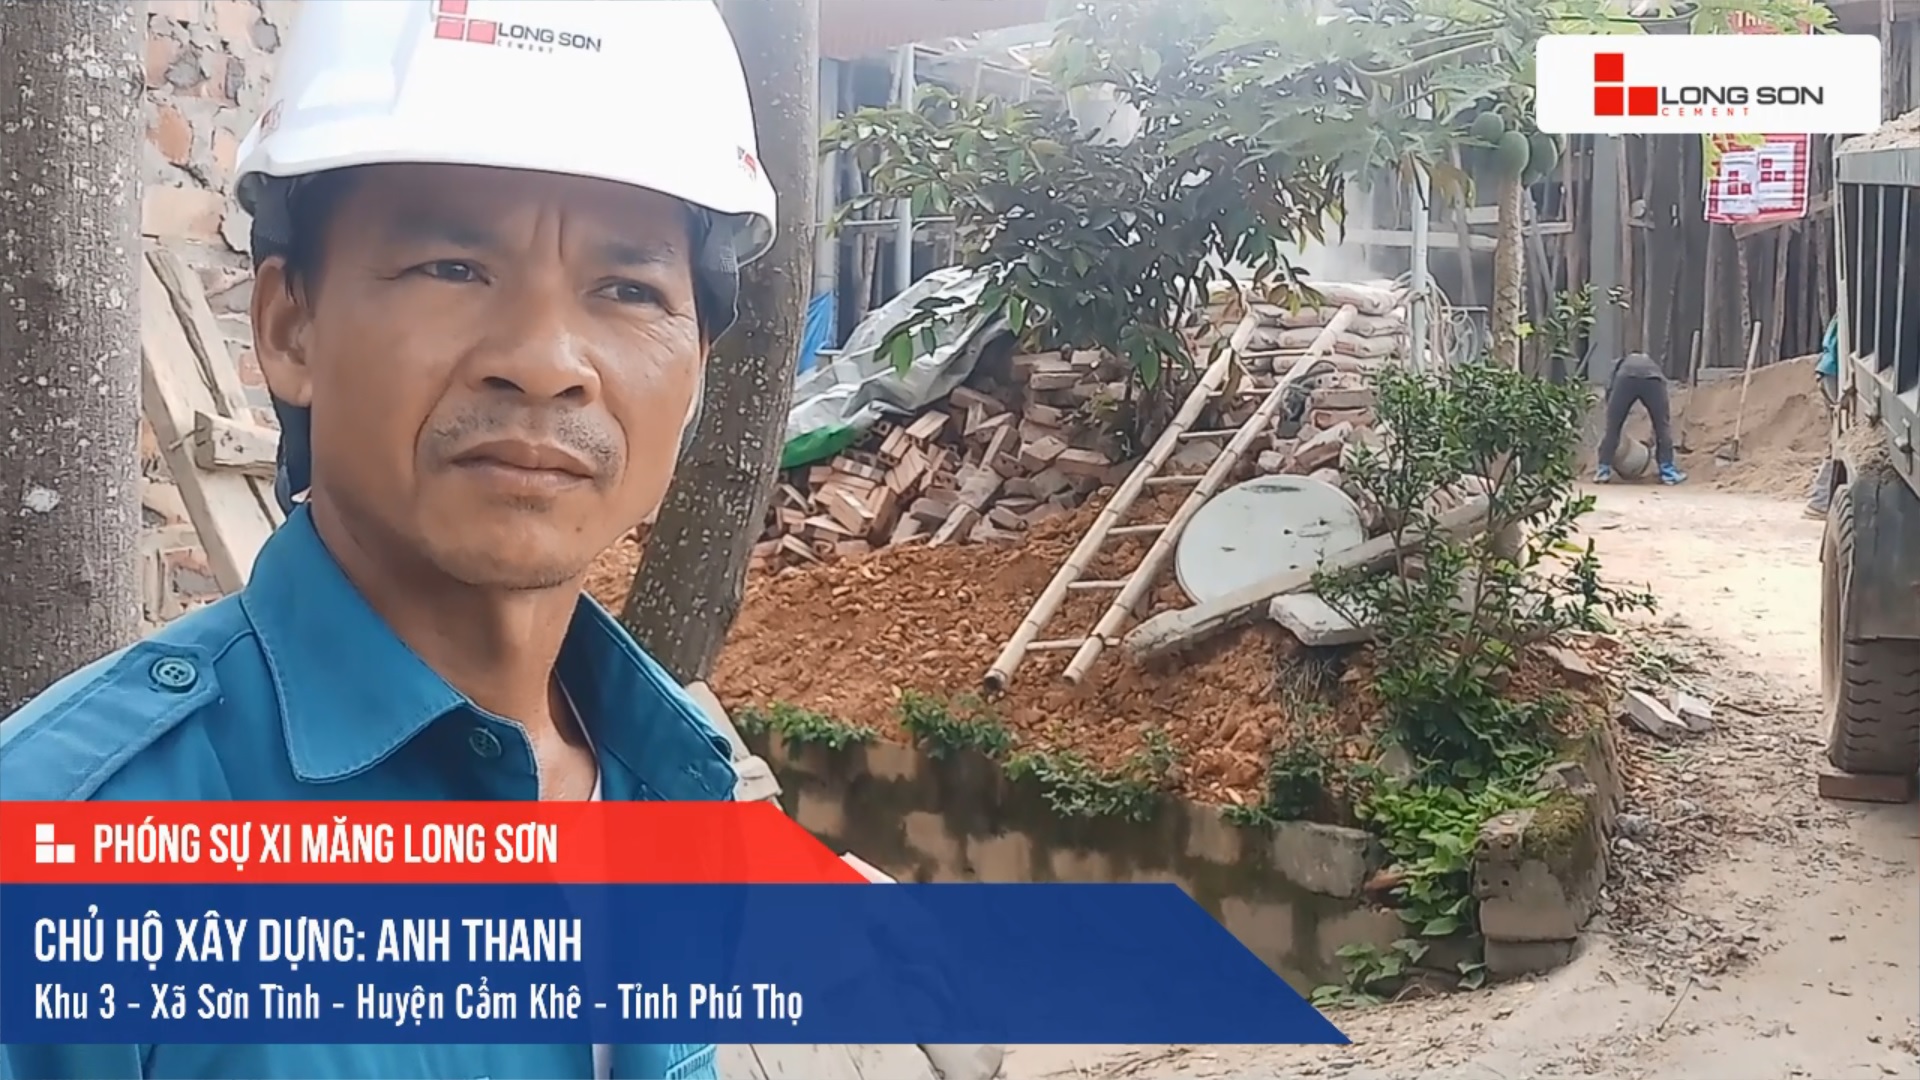 Phóng sự công trình sử dụng Xi măng Long Sơn tại Phú Thọ 05.11.2020